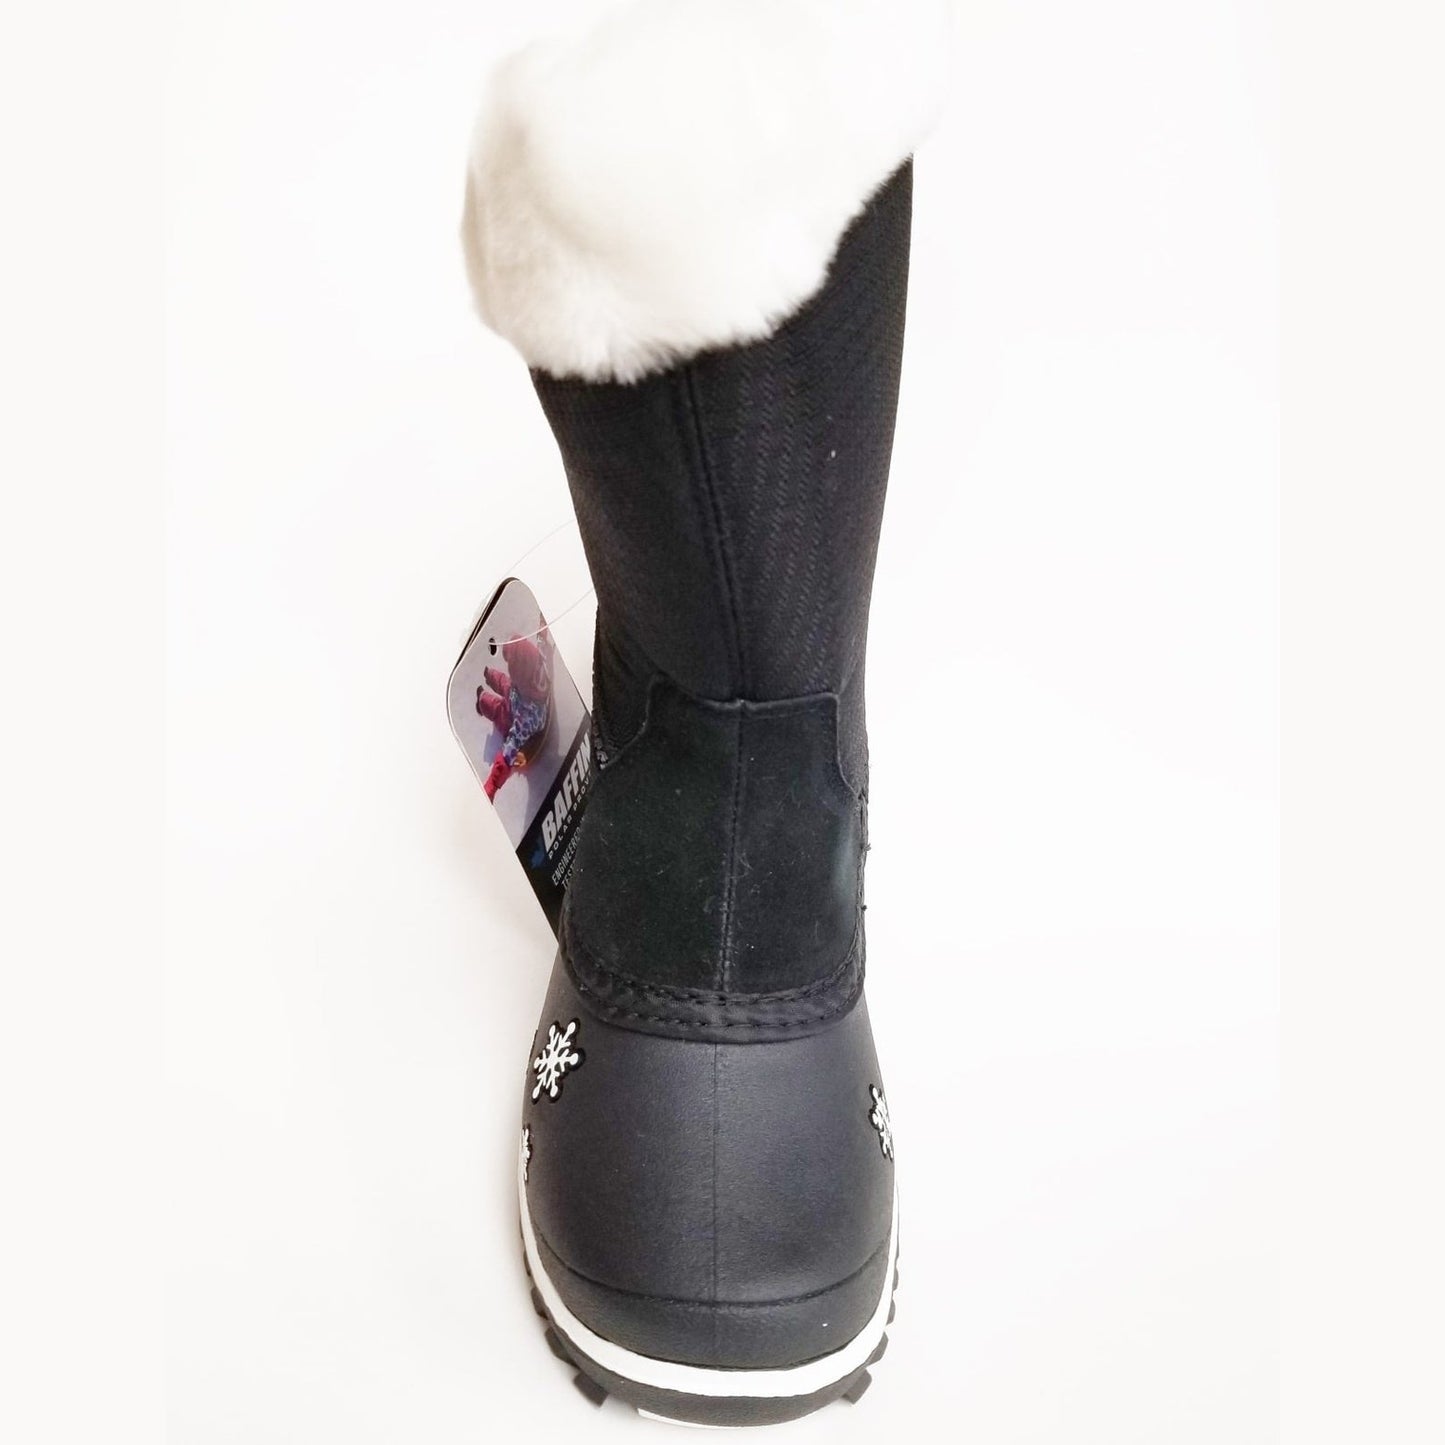 Baffin Kid's Winter Boots Switzerland - Clearance - Baffin